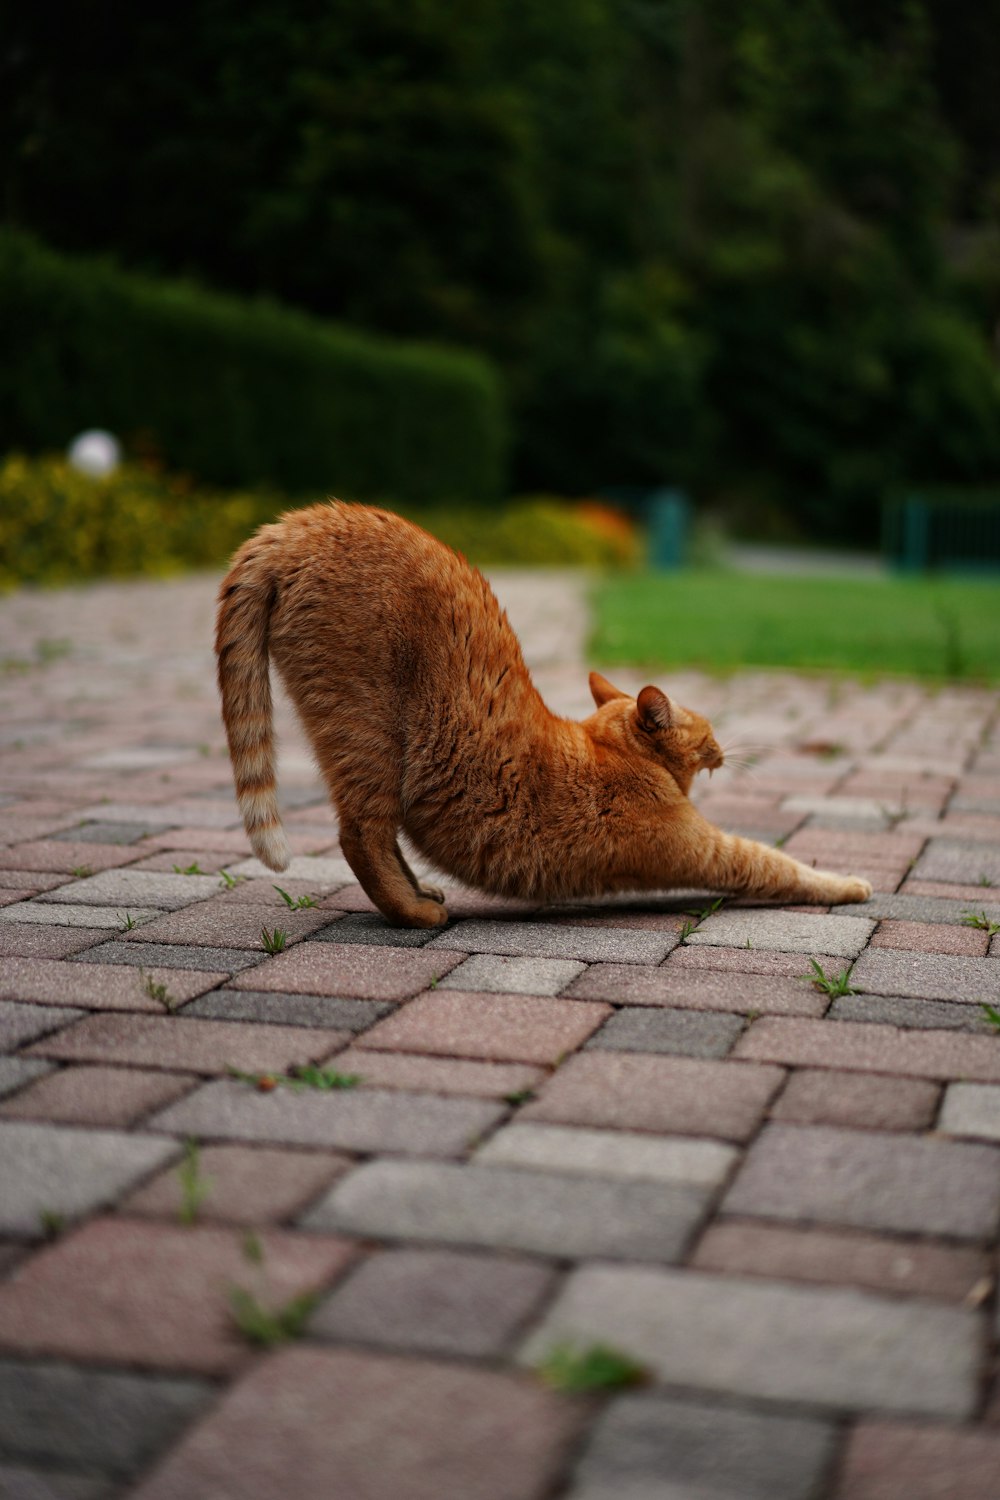 orangefarbene Tabby-Katze liegt tagsüber auf braunem Ziegelboden